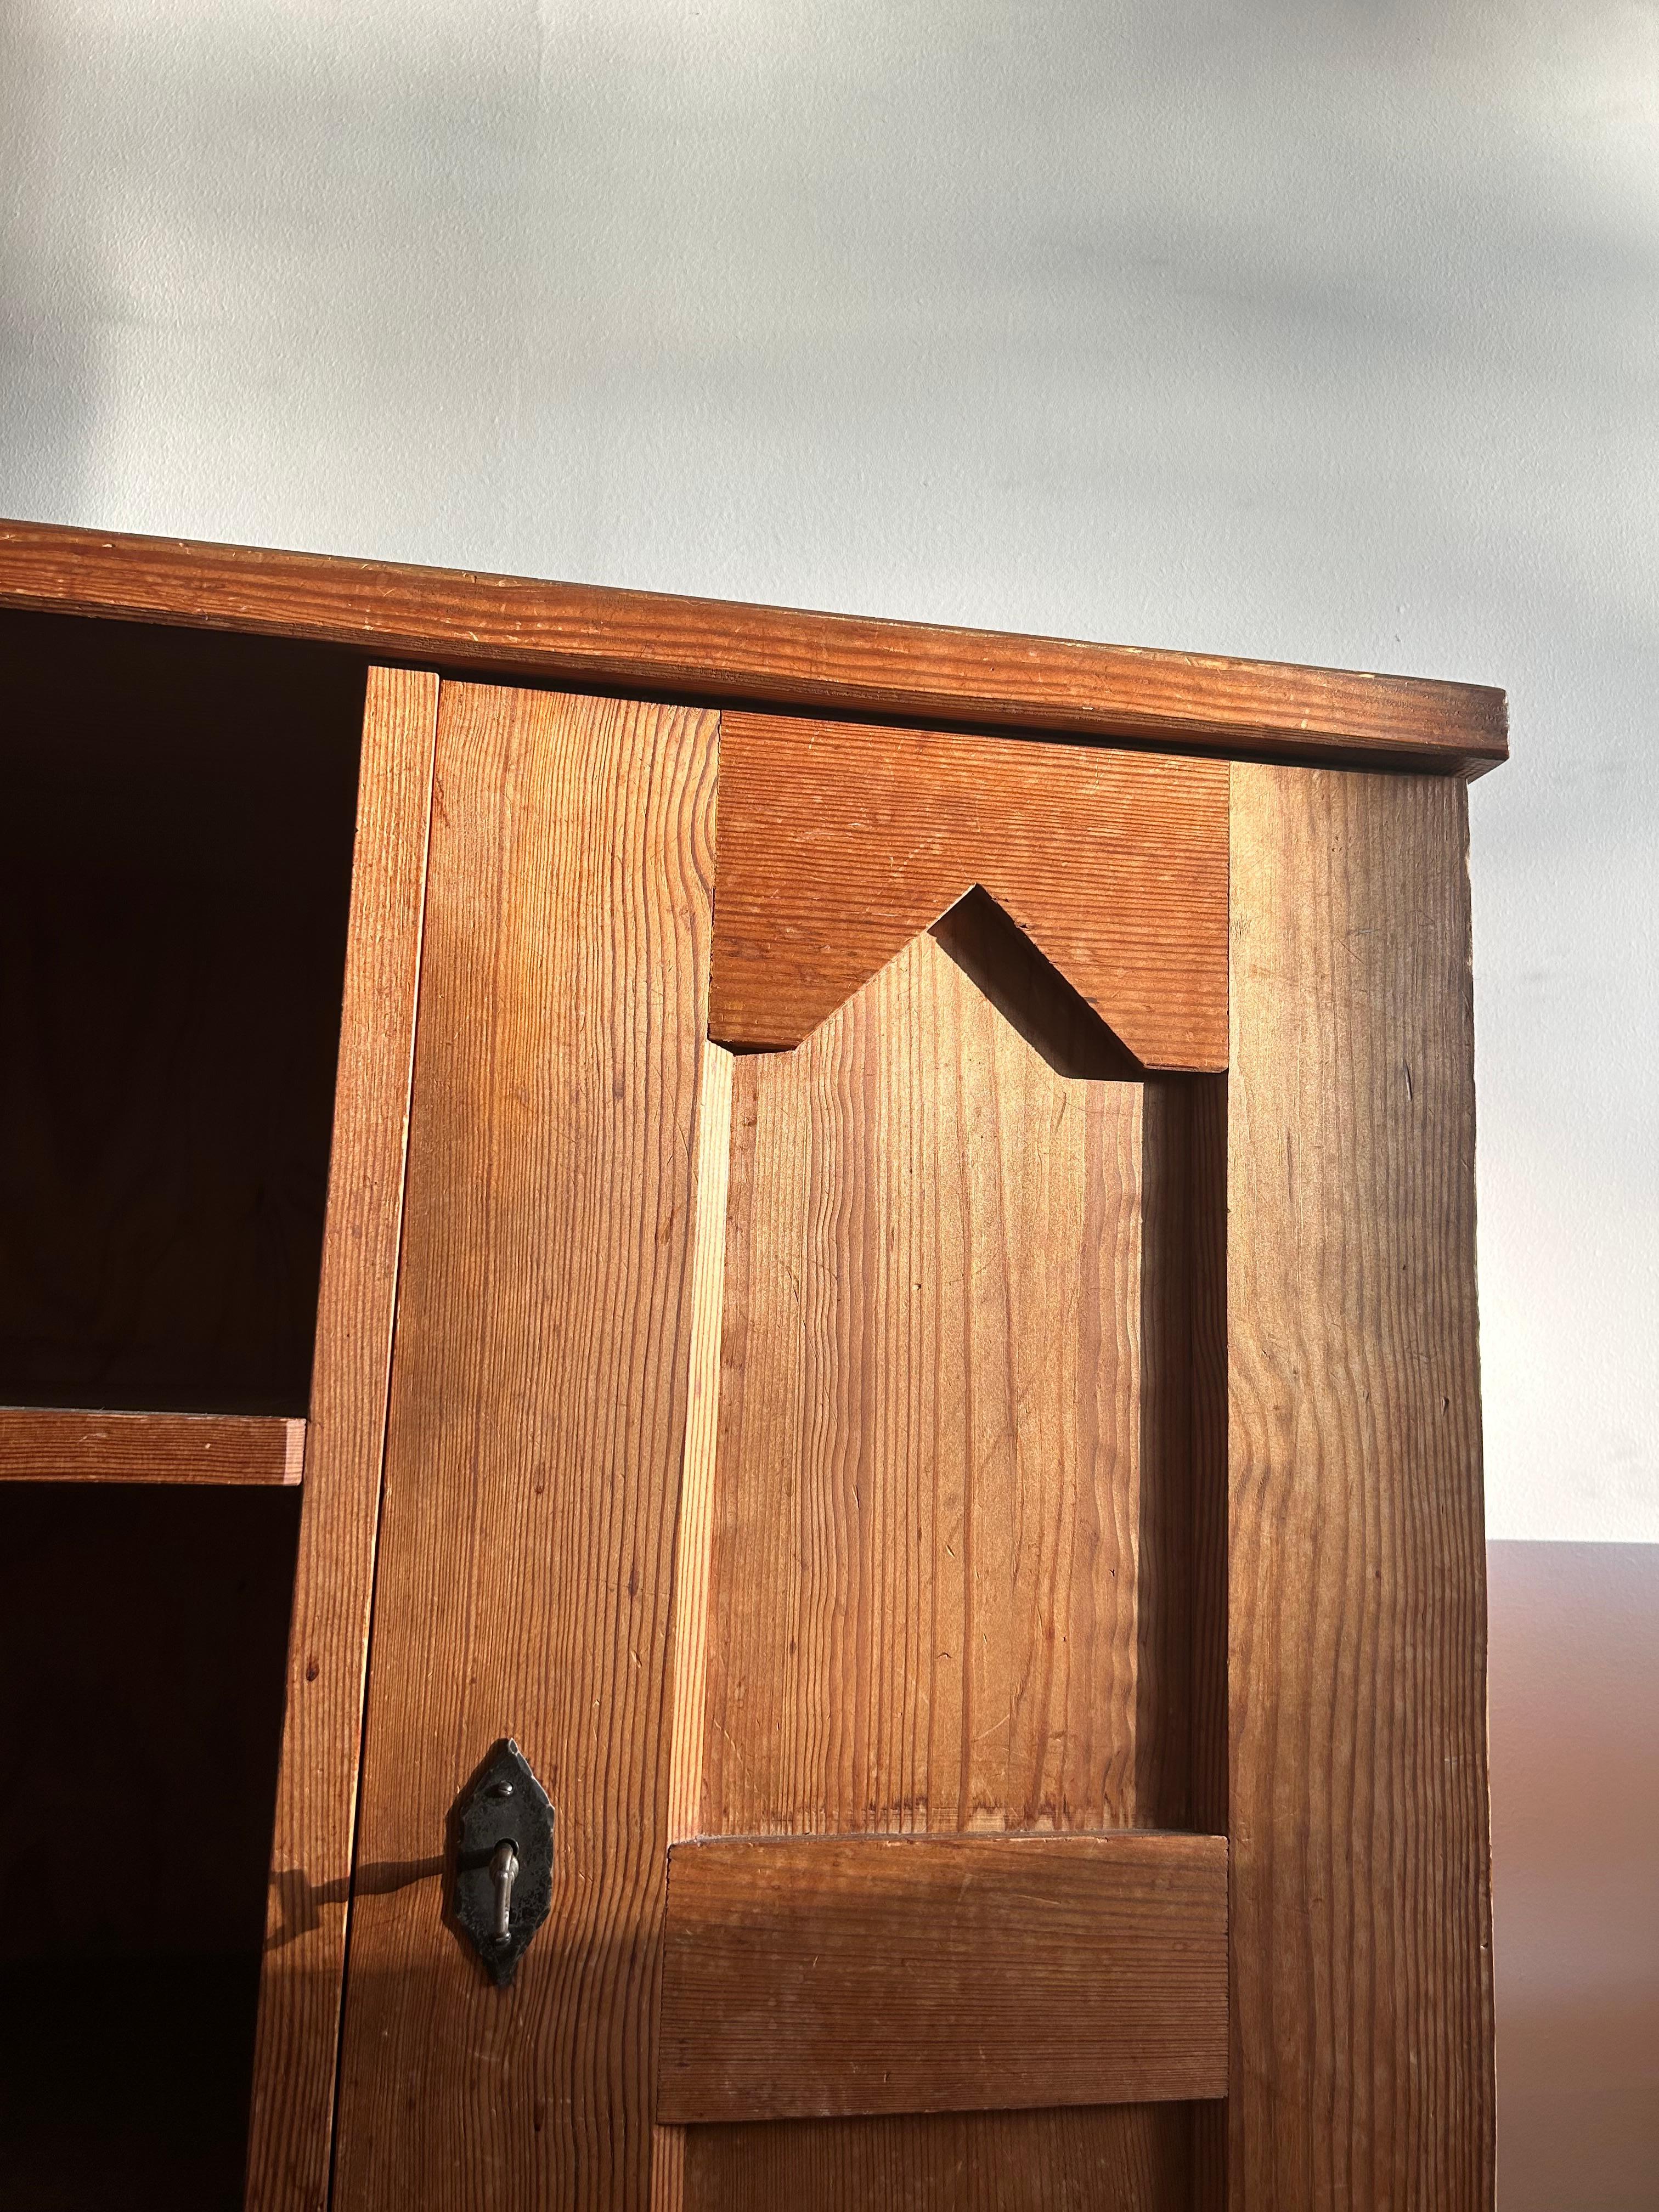 Seltenes und wichtiges Lovö-Regal aus säuregebeizter Kiefer, entworfen von Axel Einar Hjorth für Nordiska Kompaniet in den 1930er Jahren.

Dieses Regal wurde als Teil der Lovö-Serie hergestellt, einer Serie von Kabinenmöbeln von Axel Einar